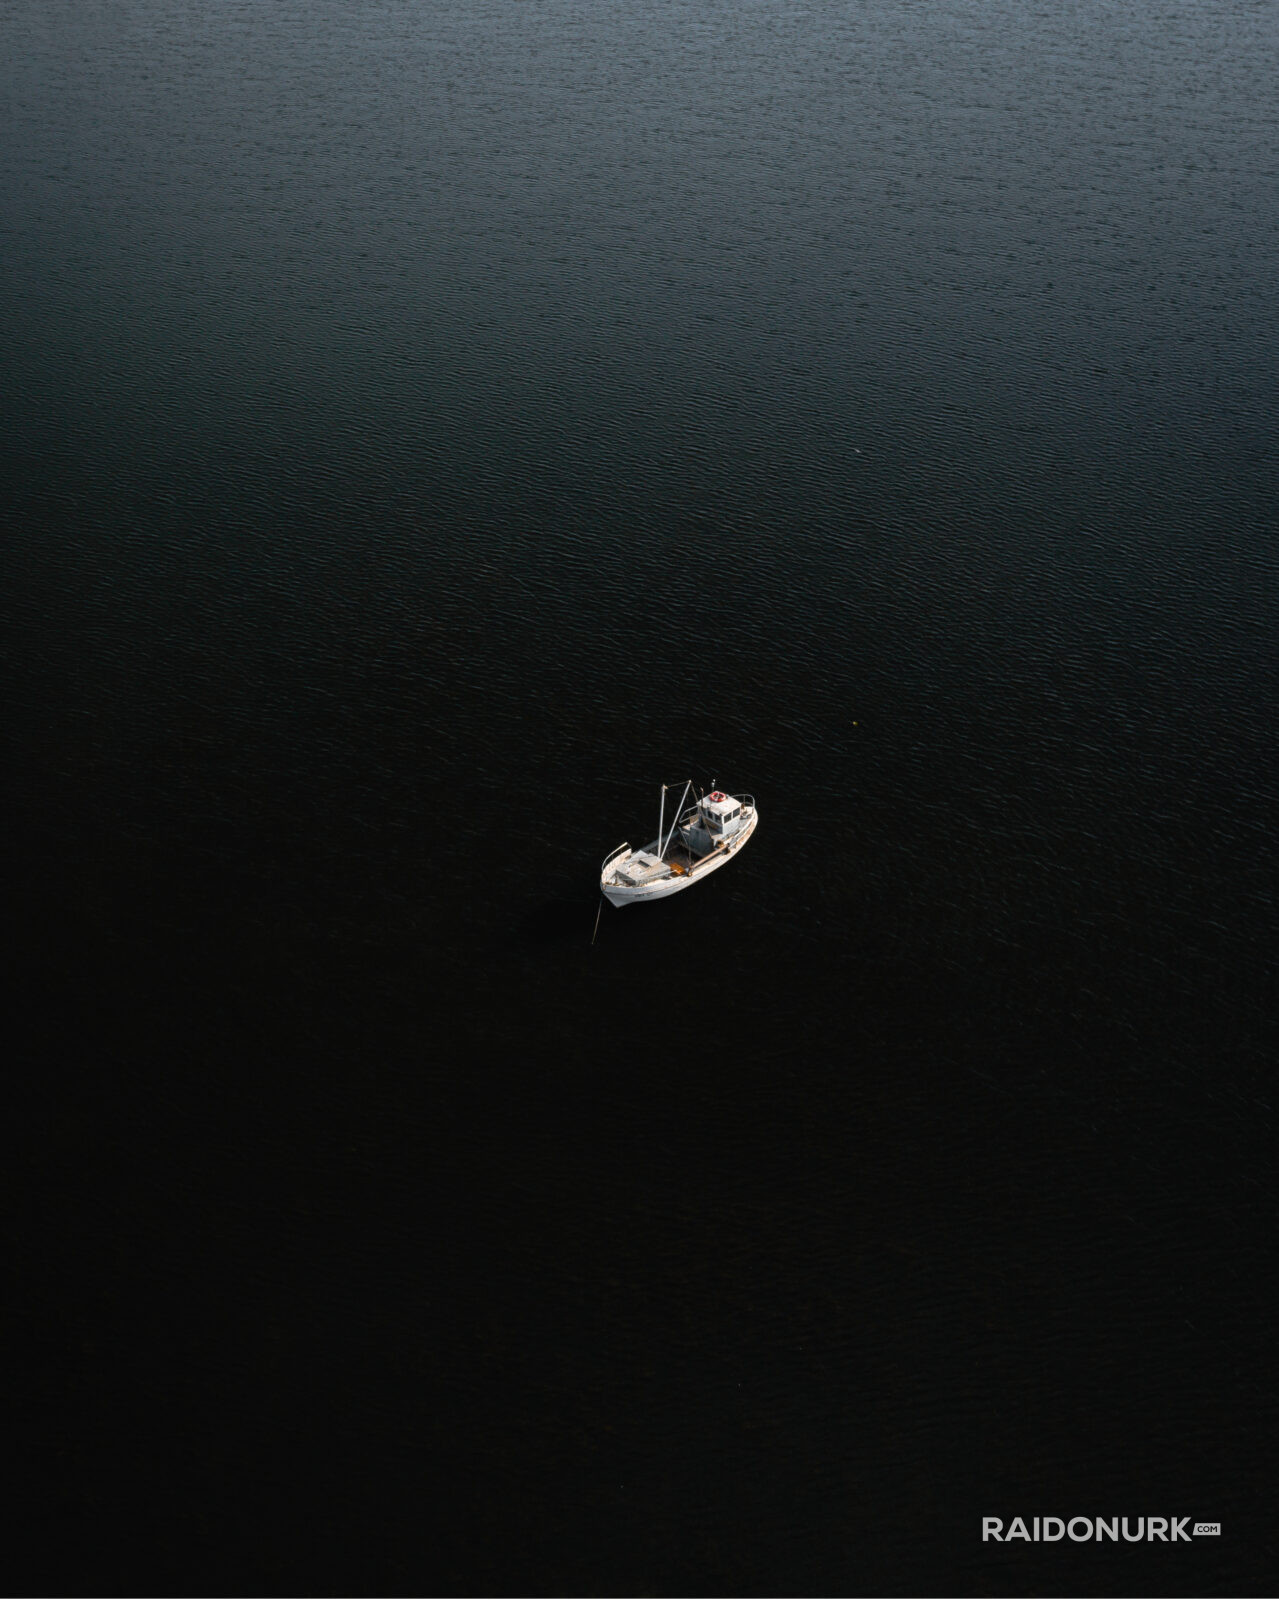 Saaremaa, Estonia, summer, minimal, fishing ship